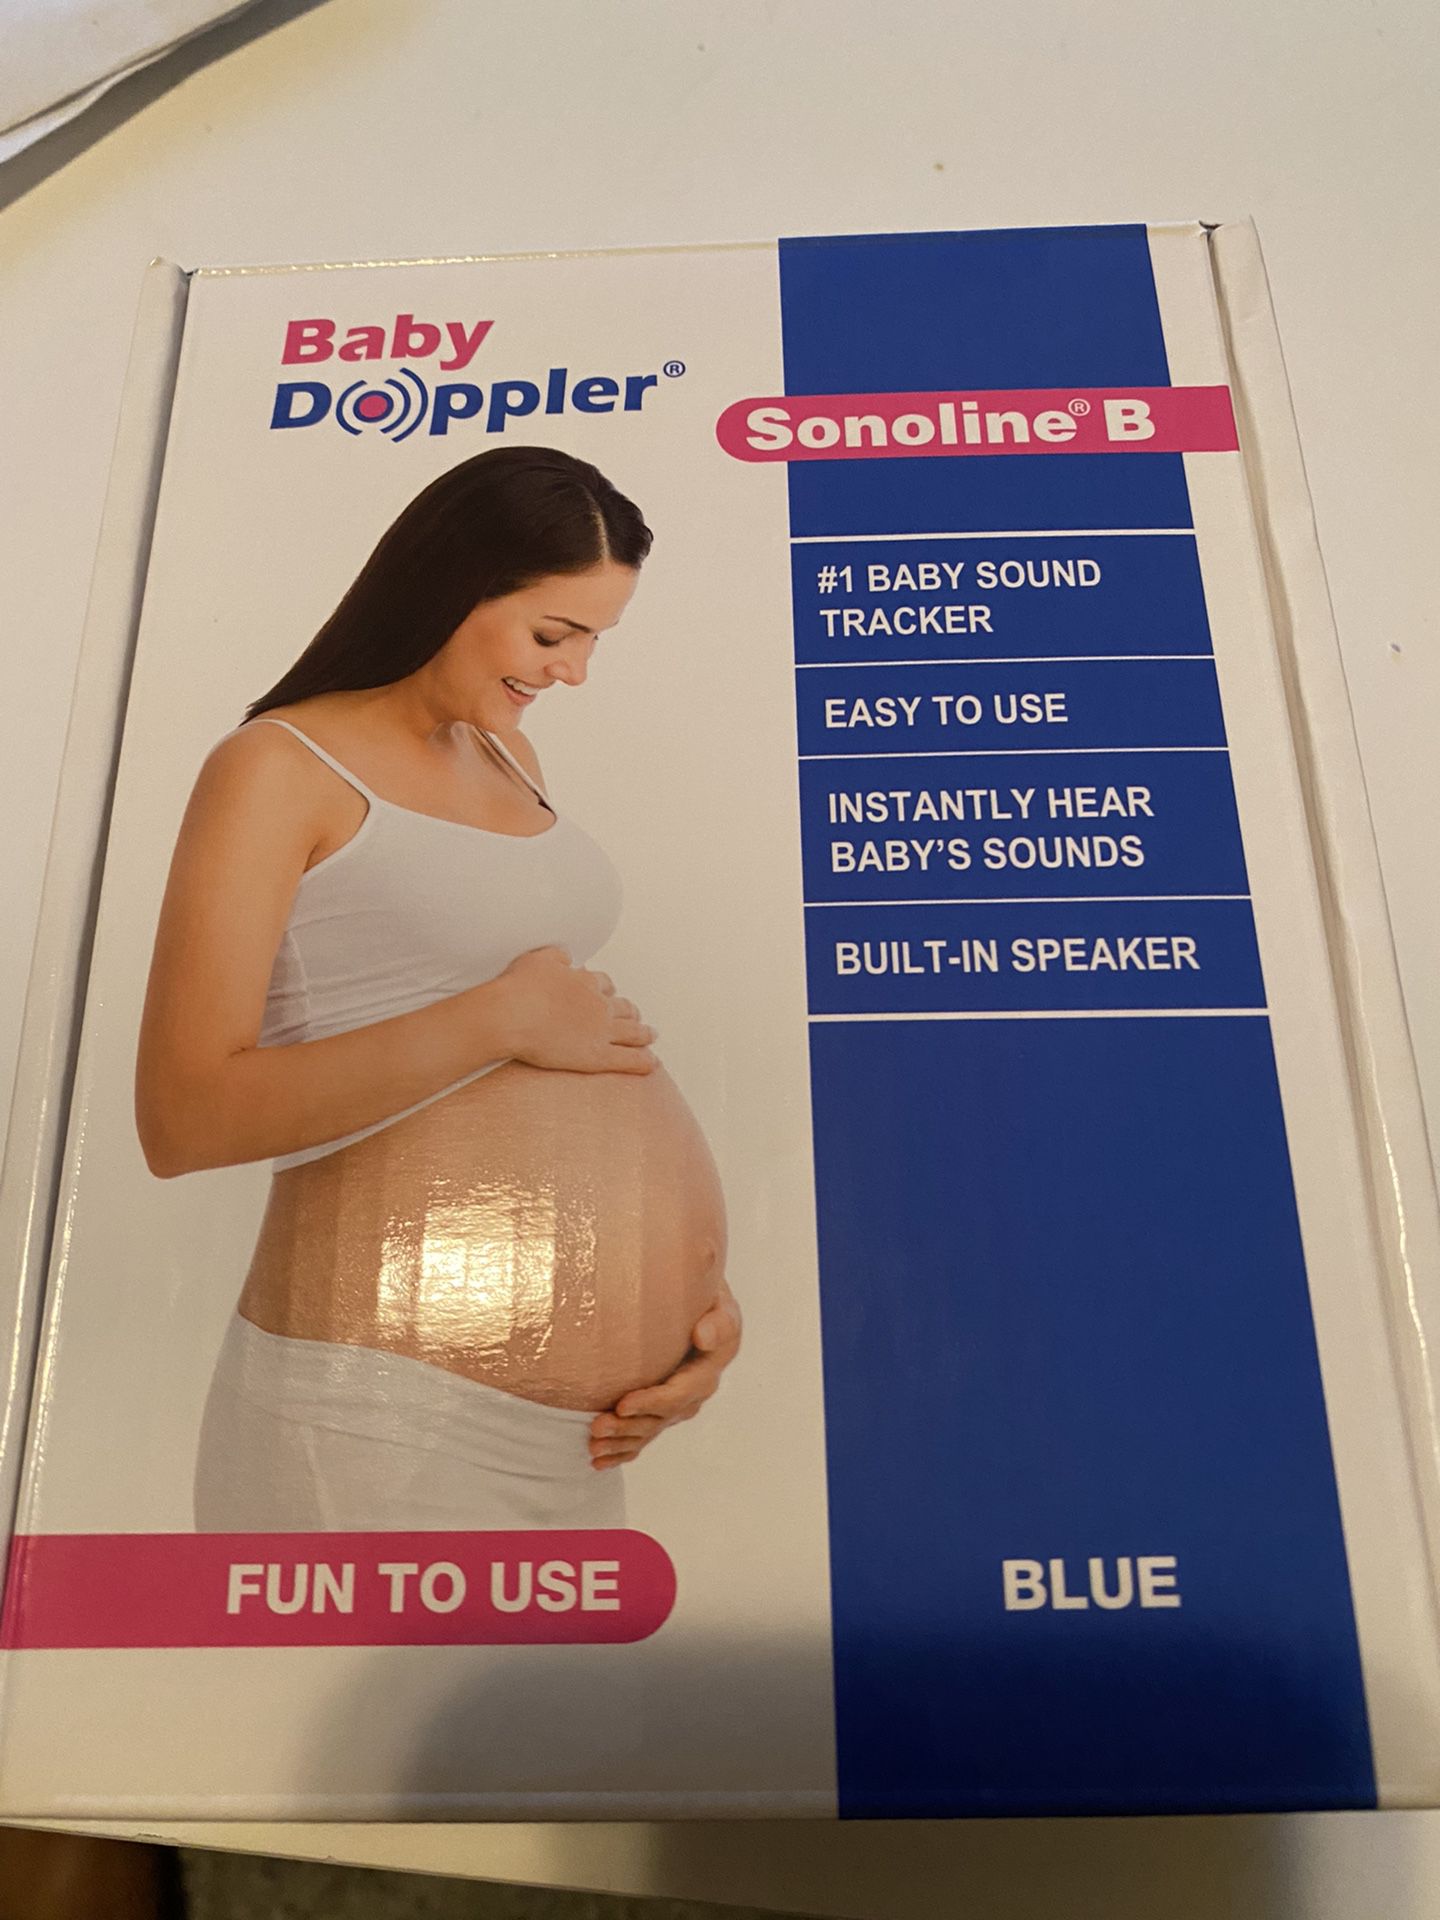 Baby Doppler Sonoline B